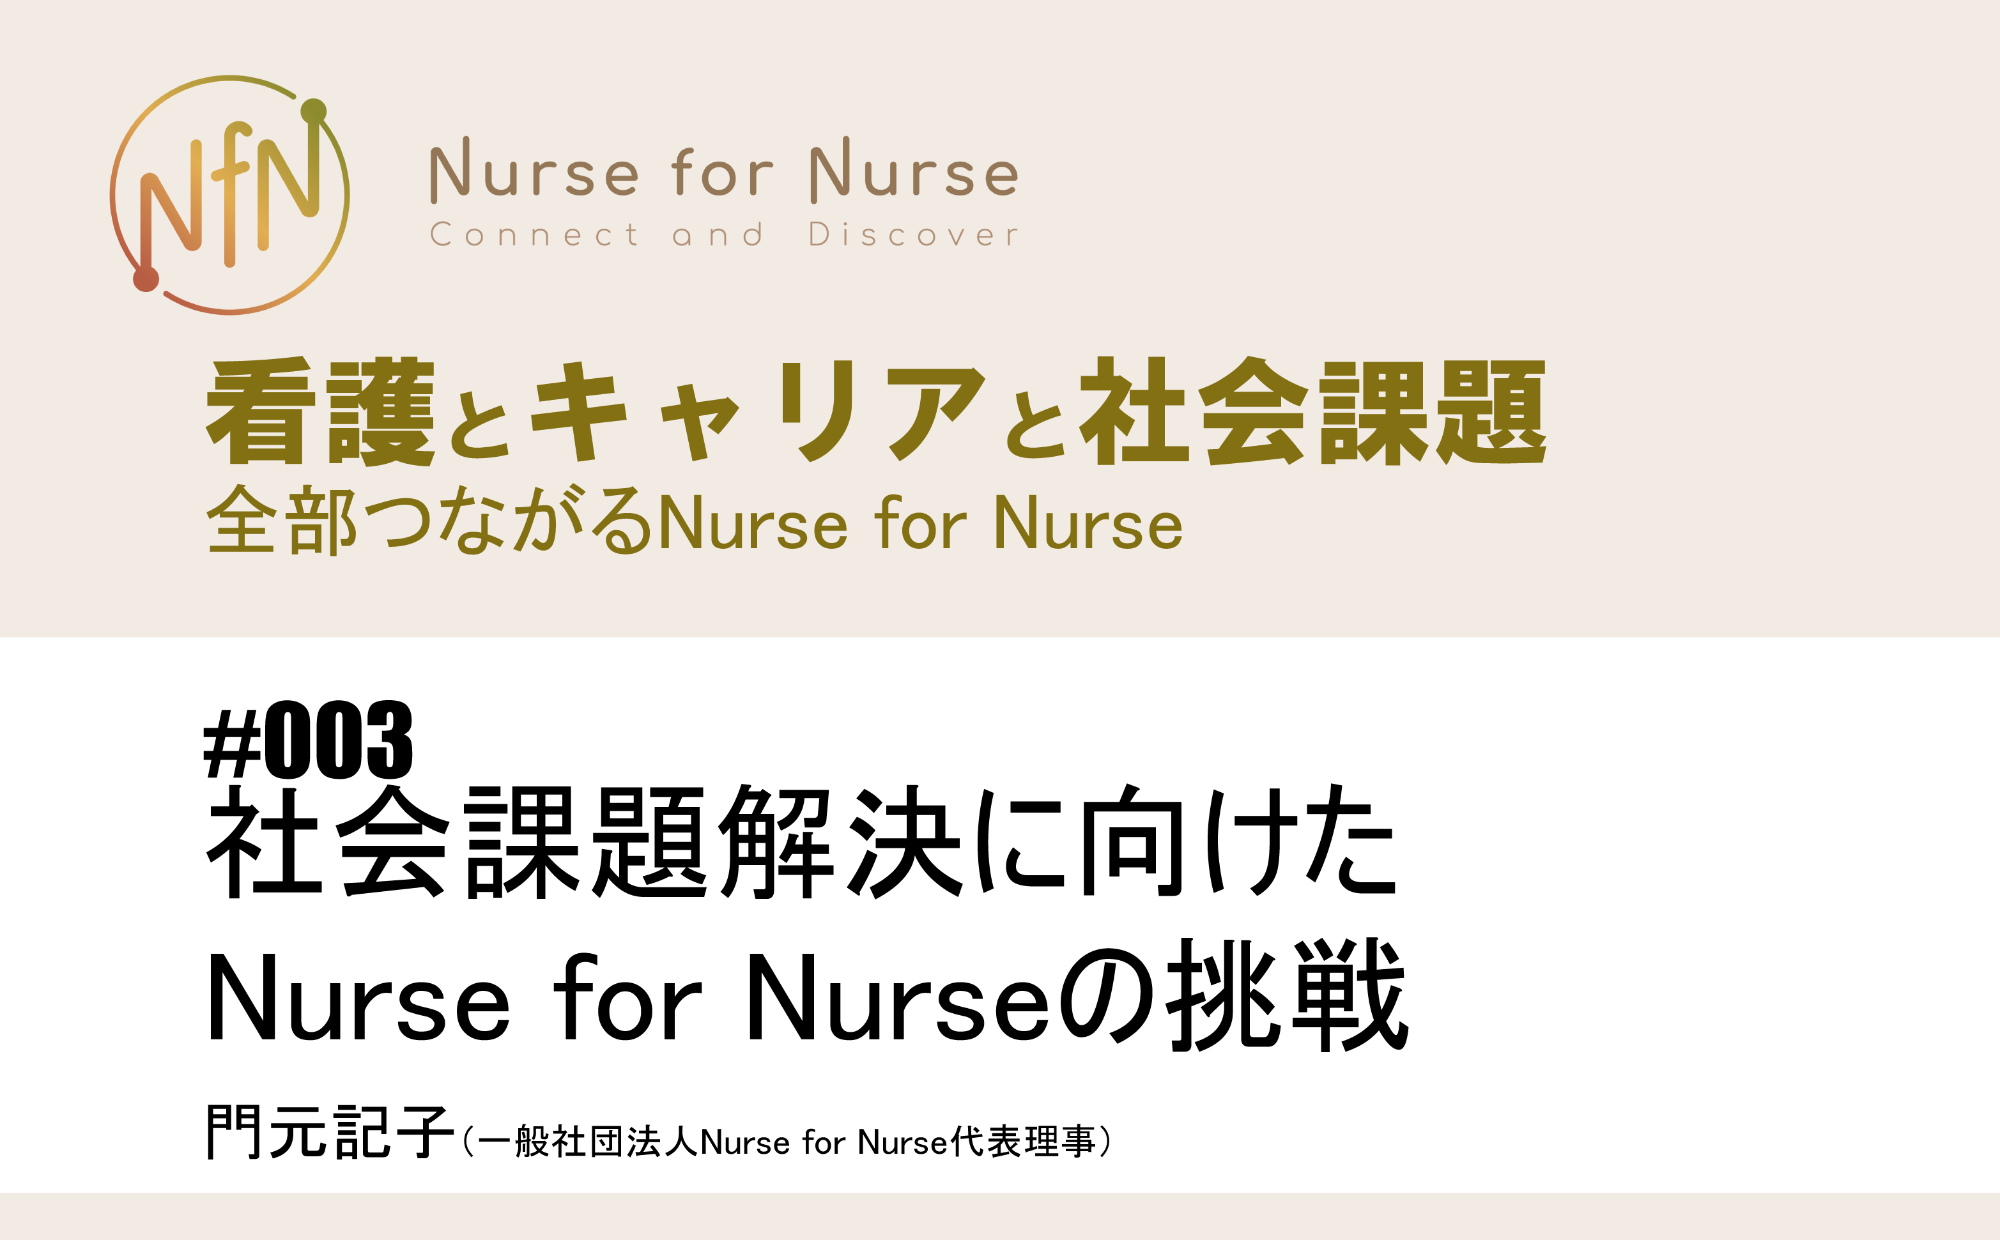 看護とキャリアと社会課題～全部つながるNurse for Nurse｜#003｜社会課題解決に向けたNurse for Nurseの挑戦